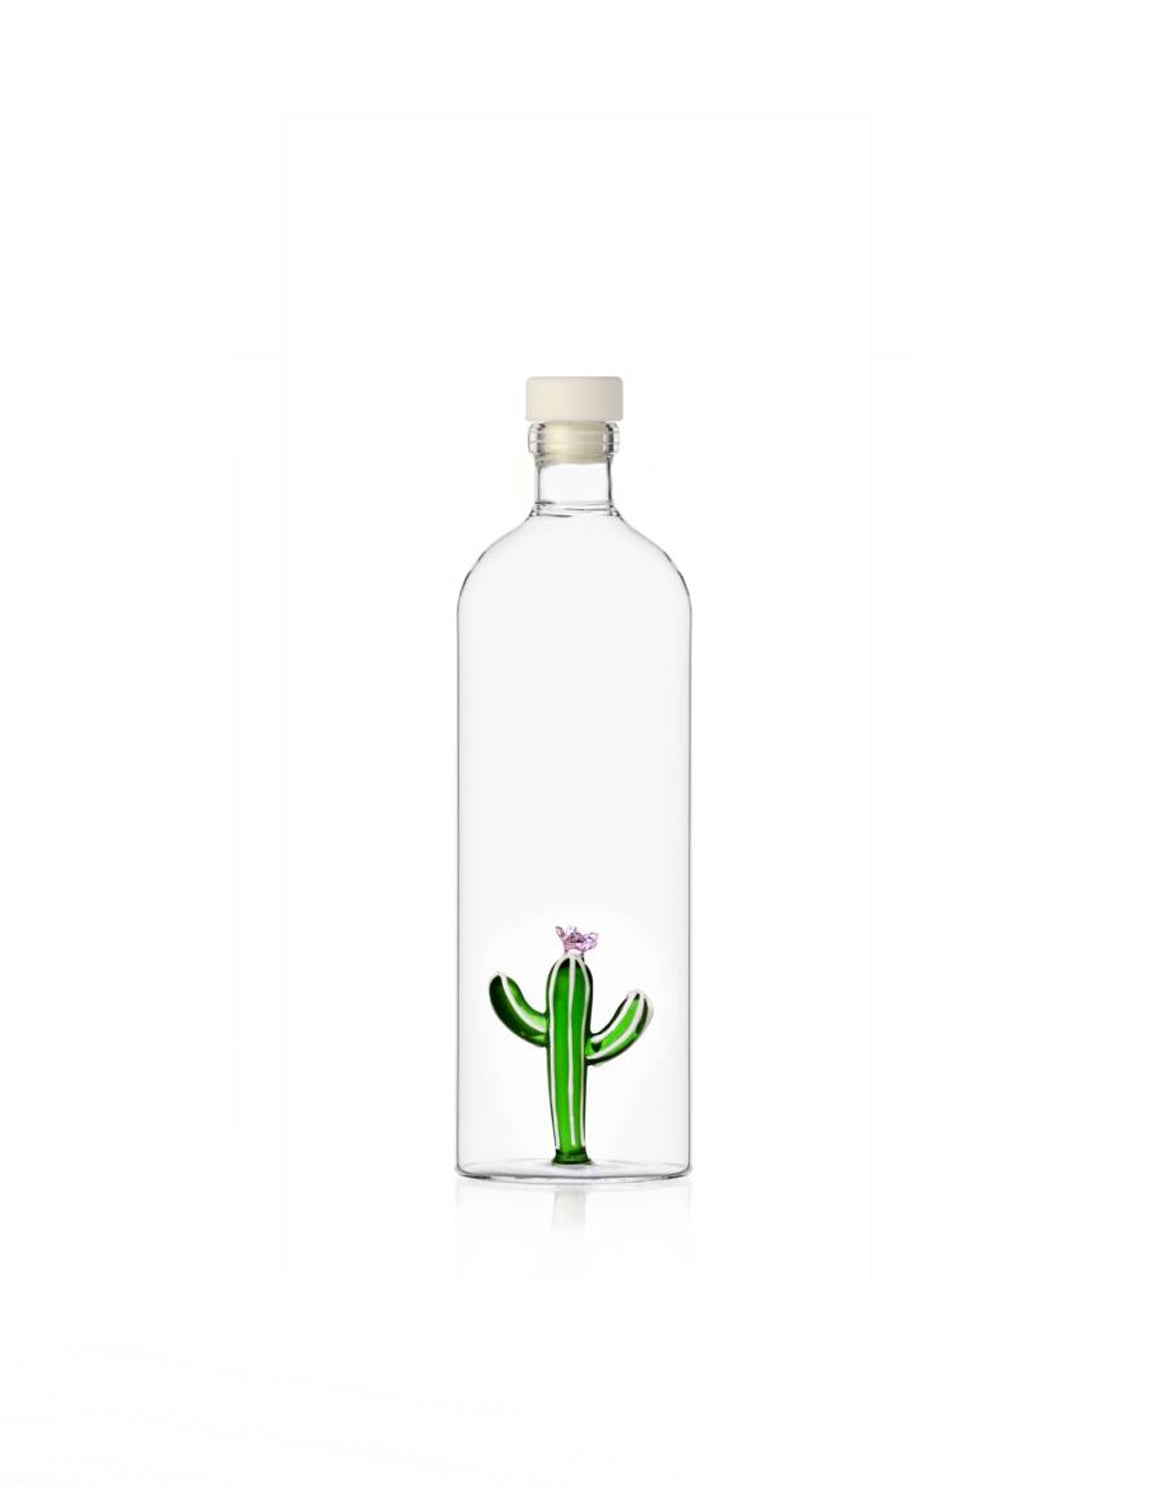 Ichendorf Desert Plant Bottle, green cactus